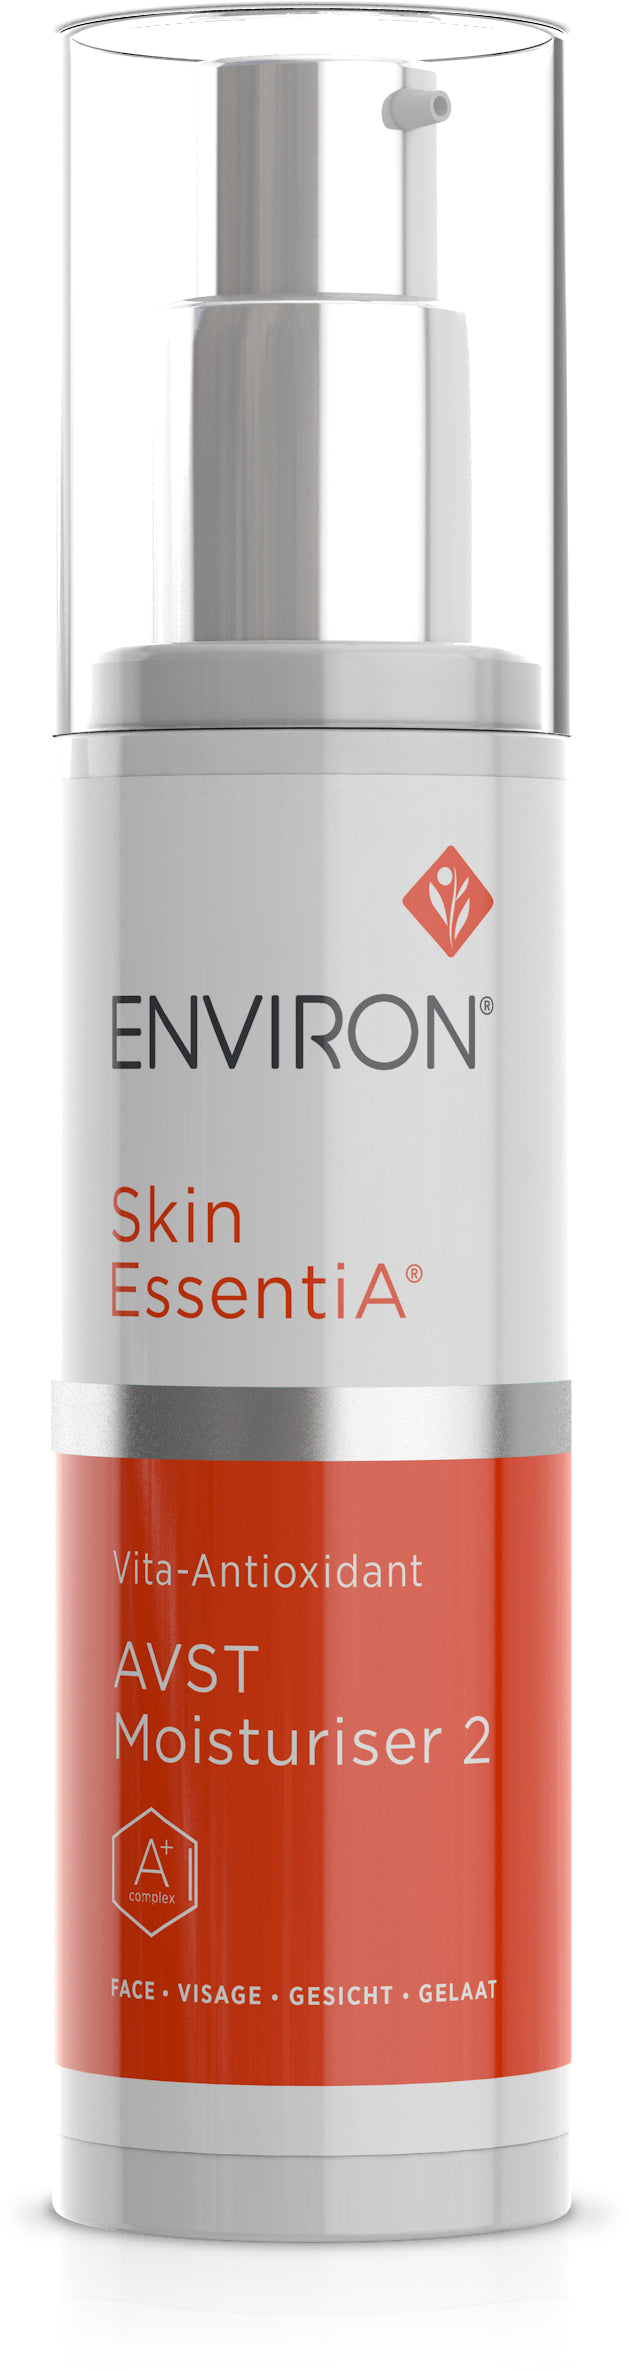 Skin EssentiA | Vita-Antioxidant | AVST Moisturiser 2